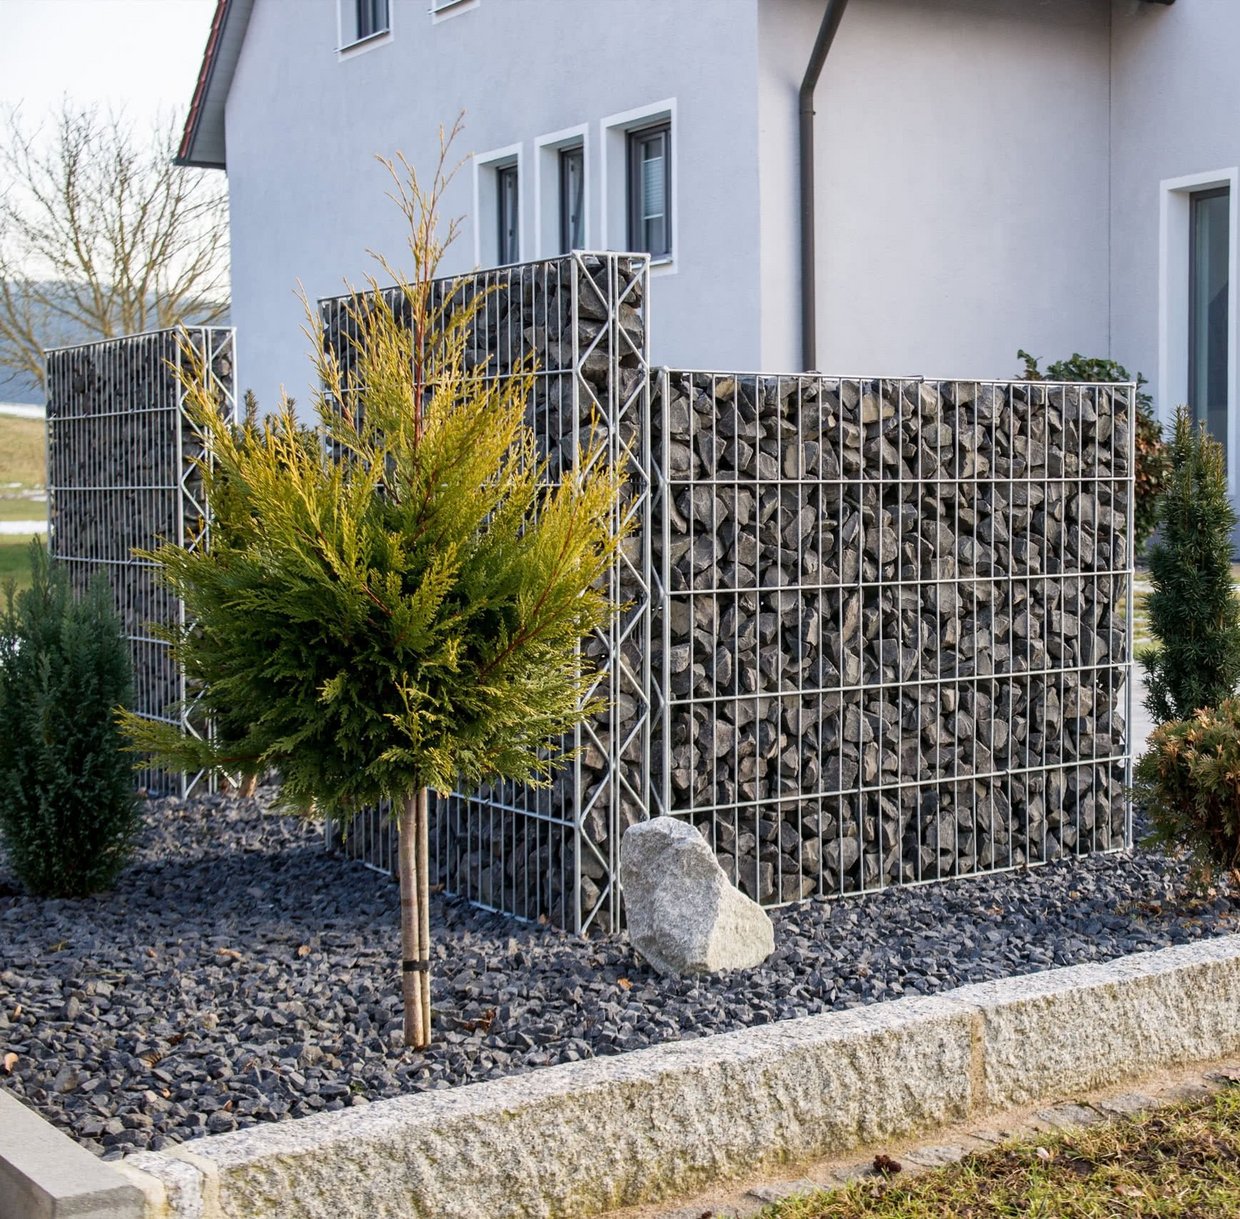 Zaunsteinkörbe bieten Sichtschutz im Garten eines Einfamilienhauses.